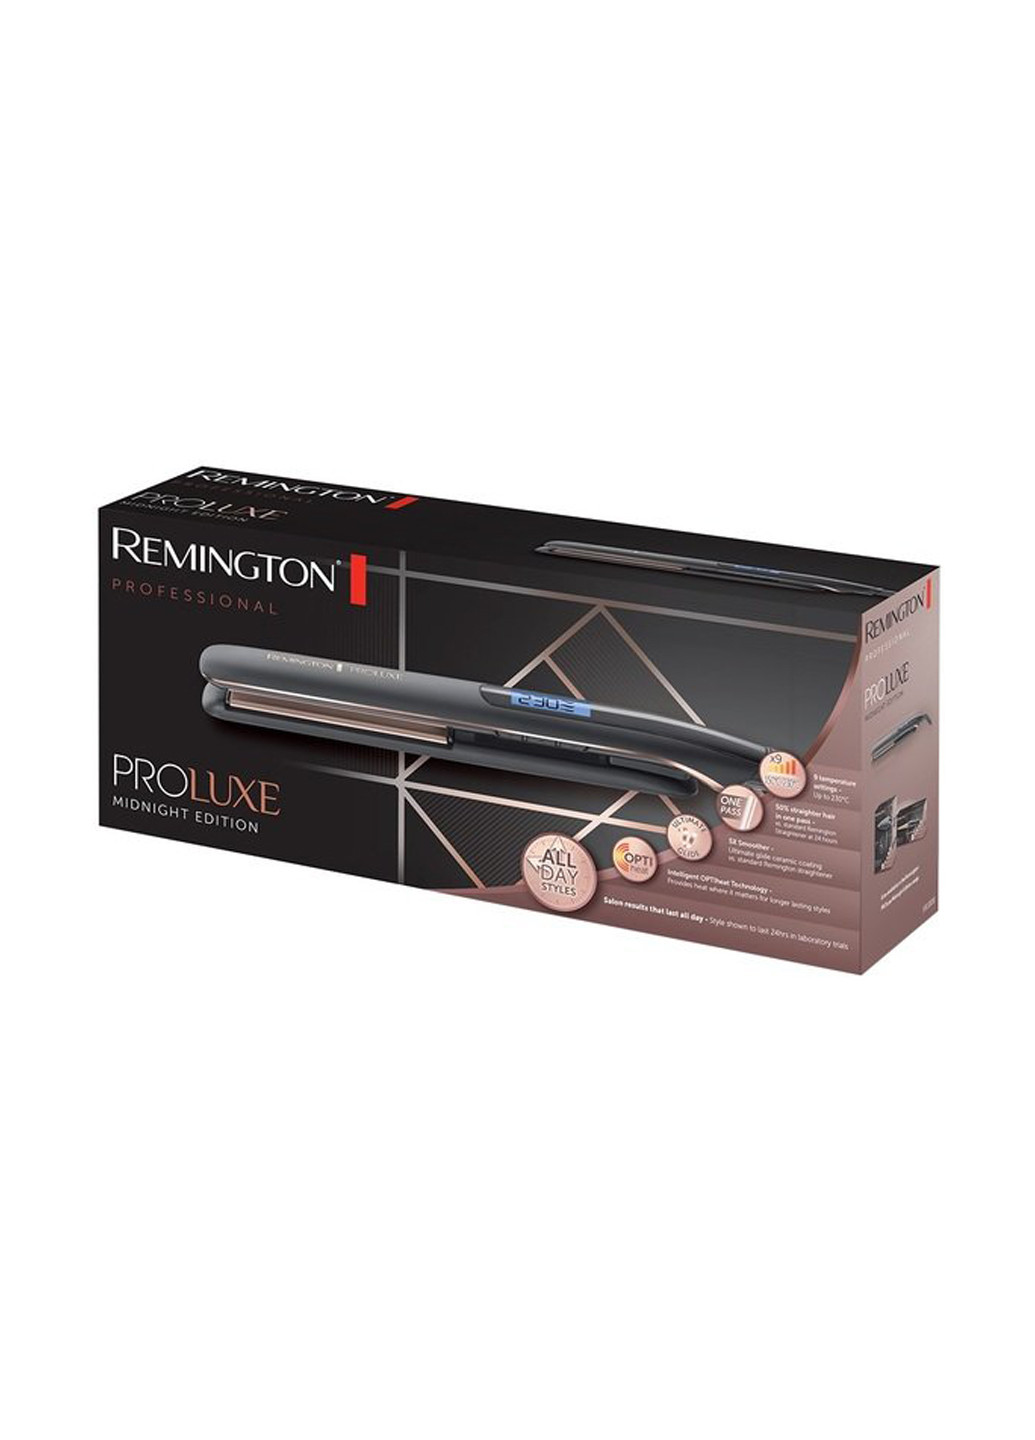 Выпрямитель для волос Remington s9100b proluxe midnight edition (149883596)